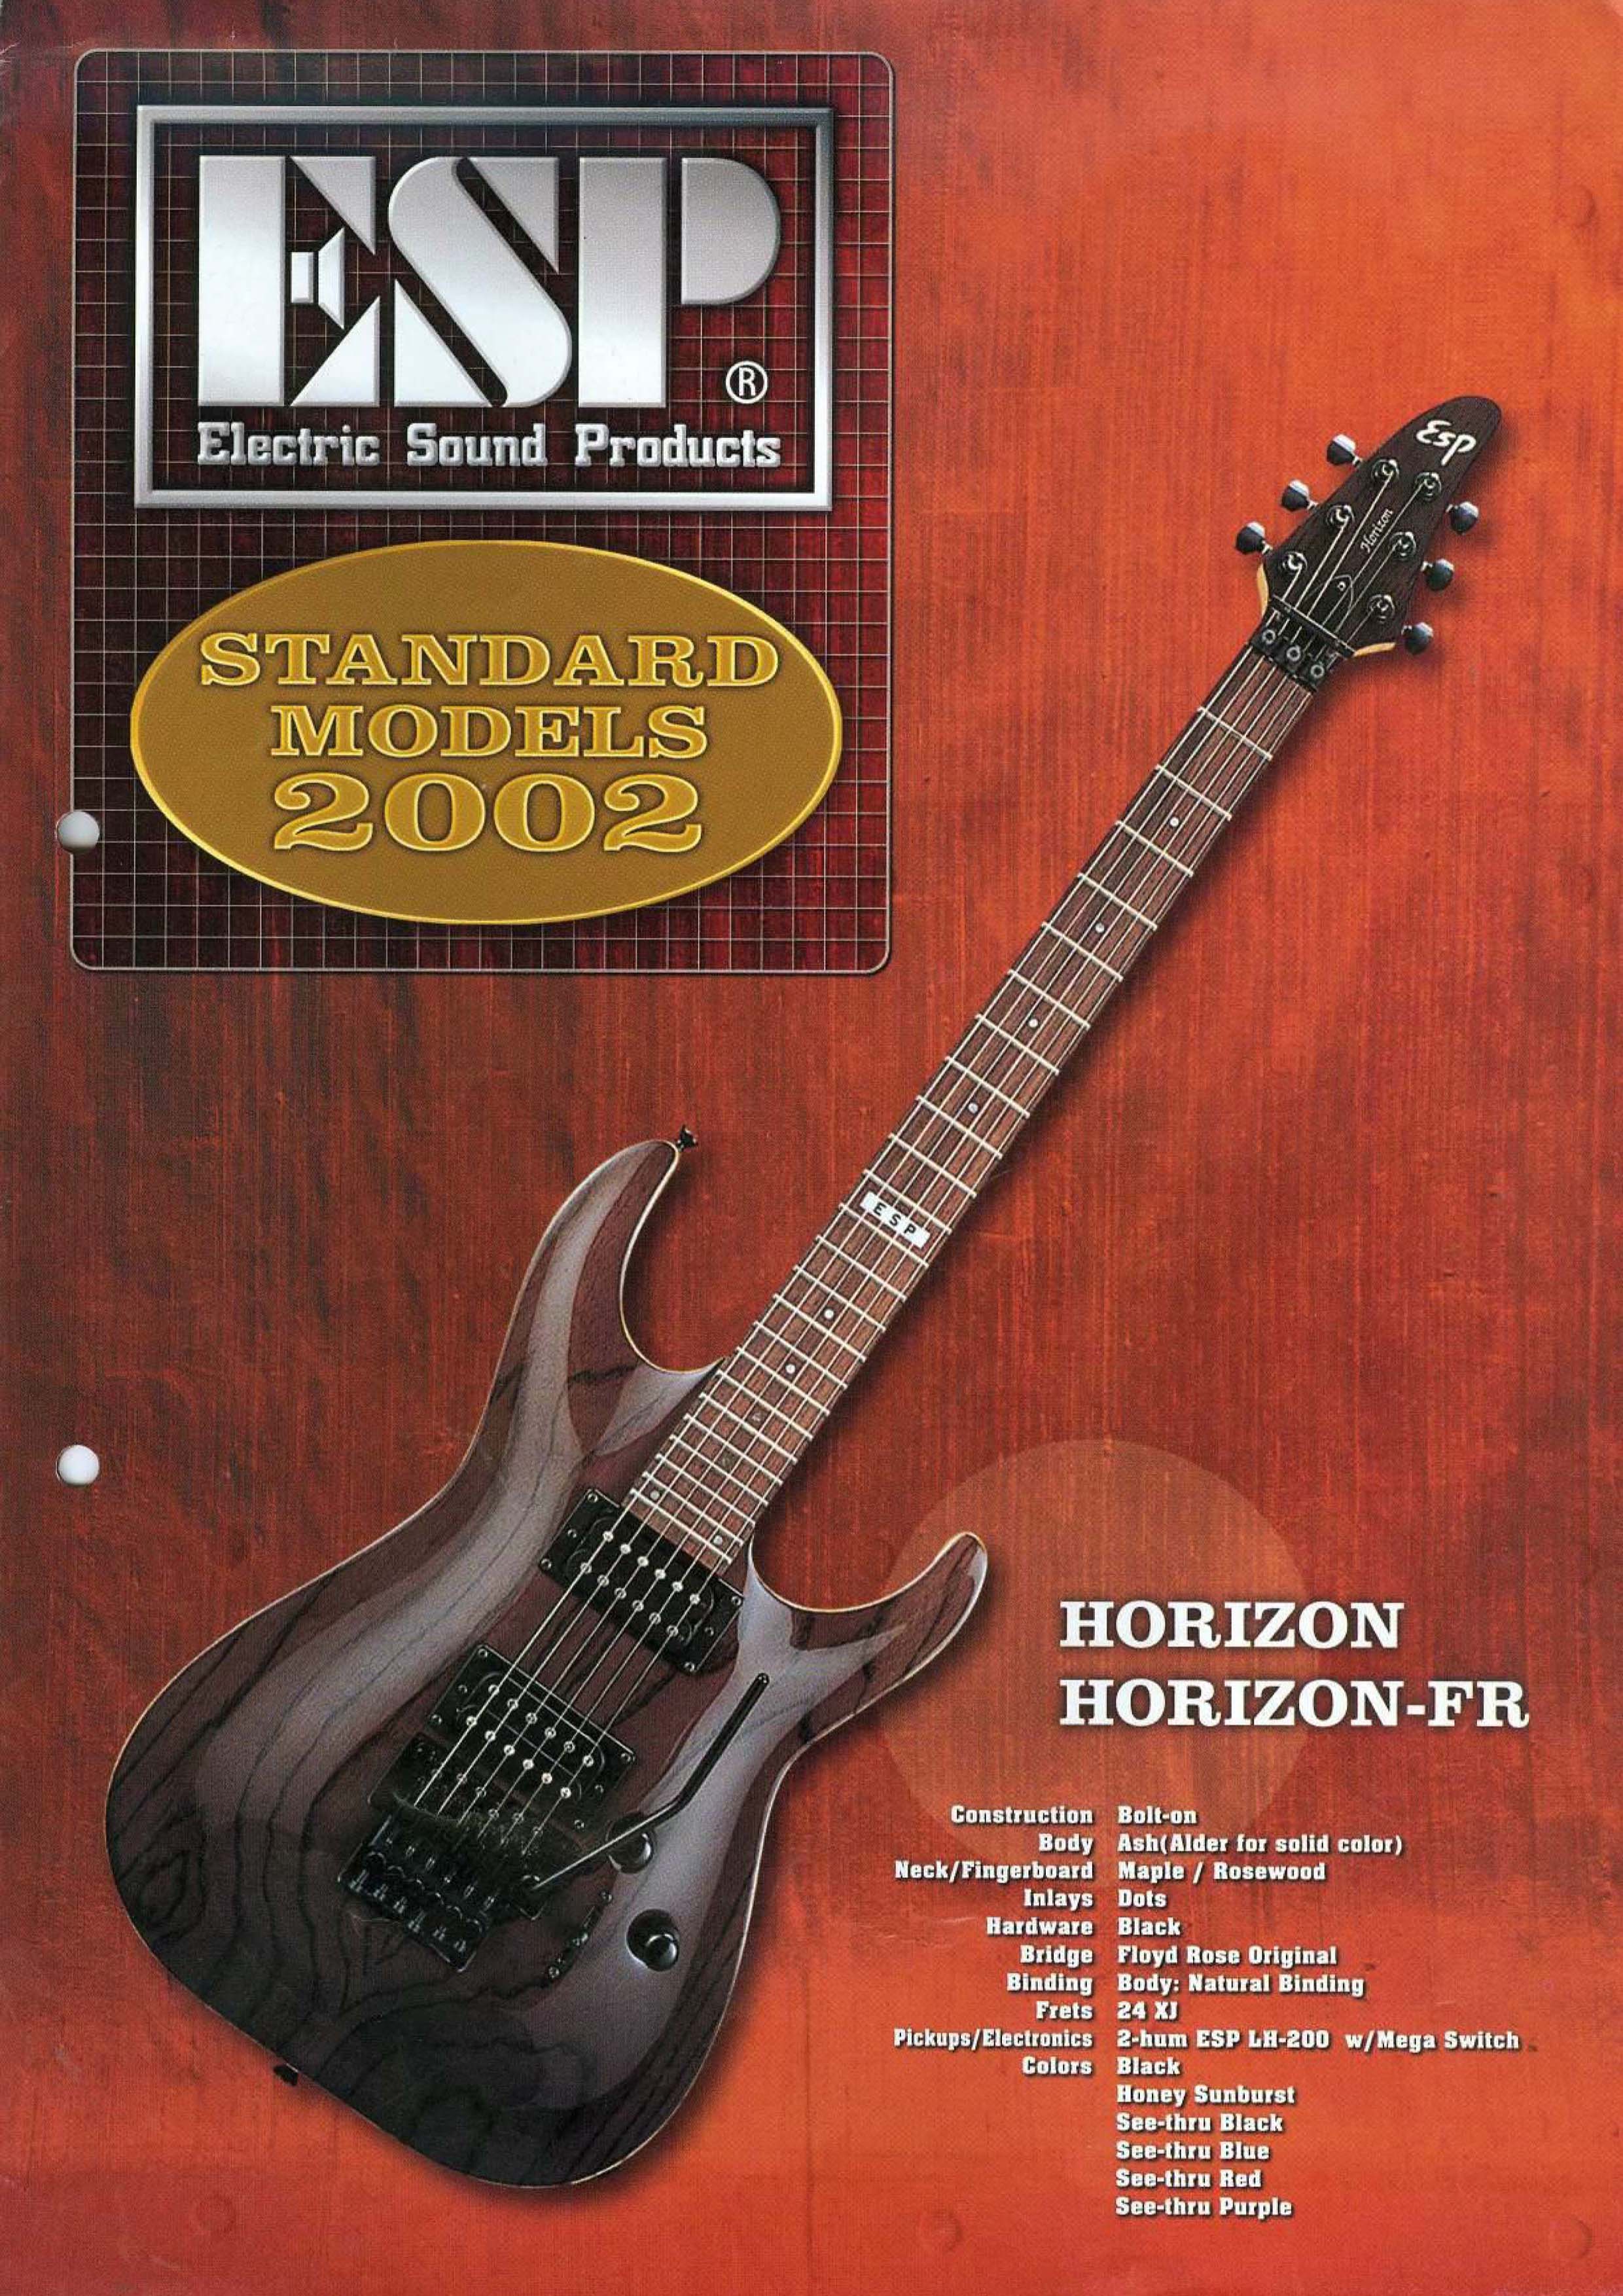 ESP Catalogs - Guitar Compare - ESP Brochures - ESP Price lists